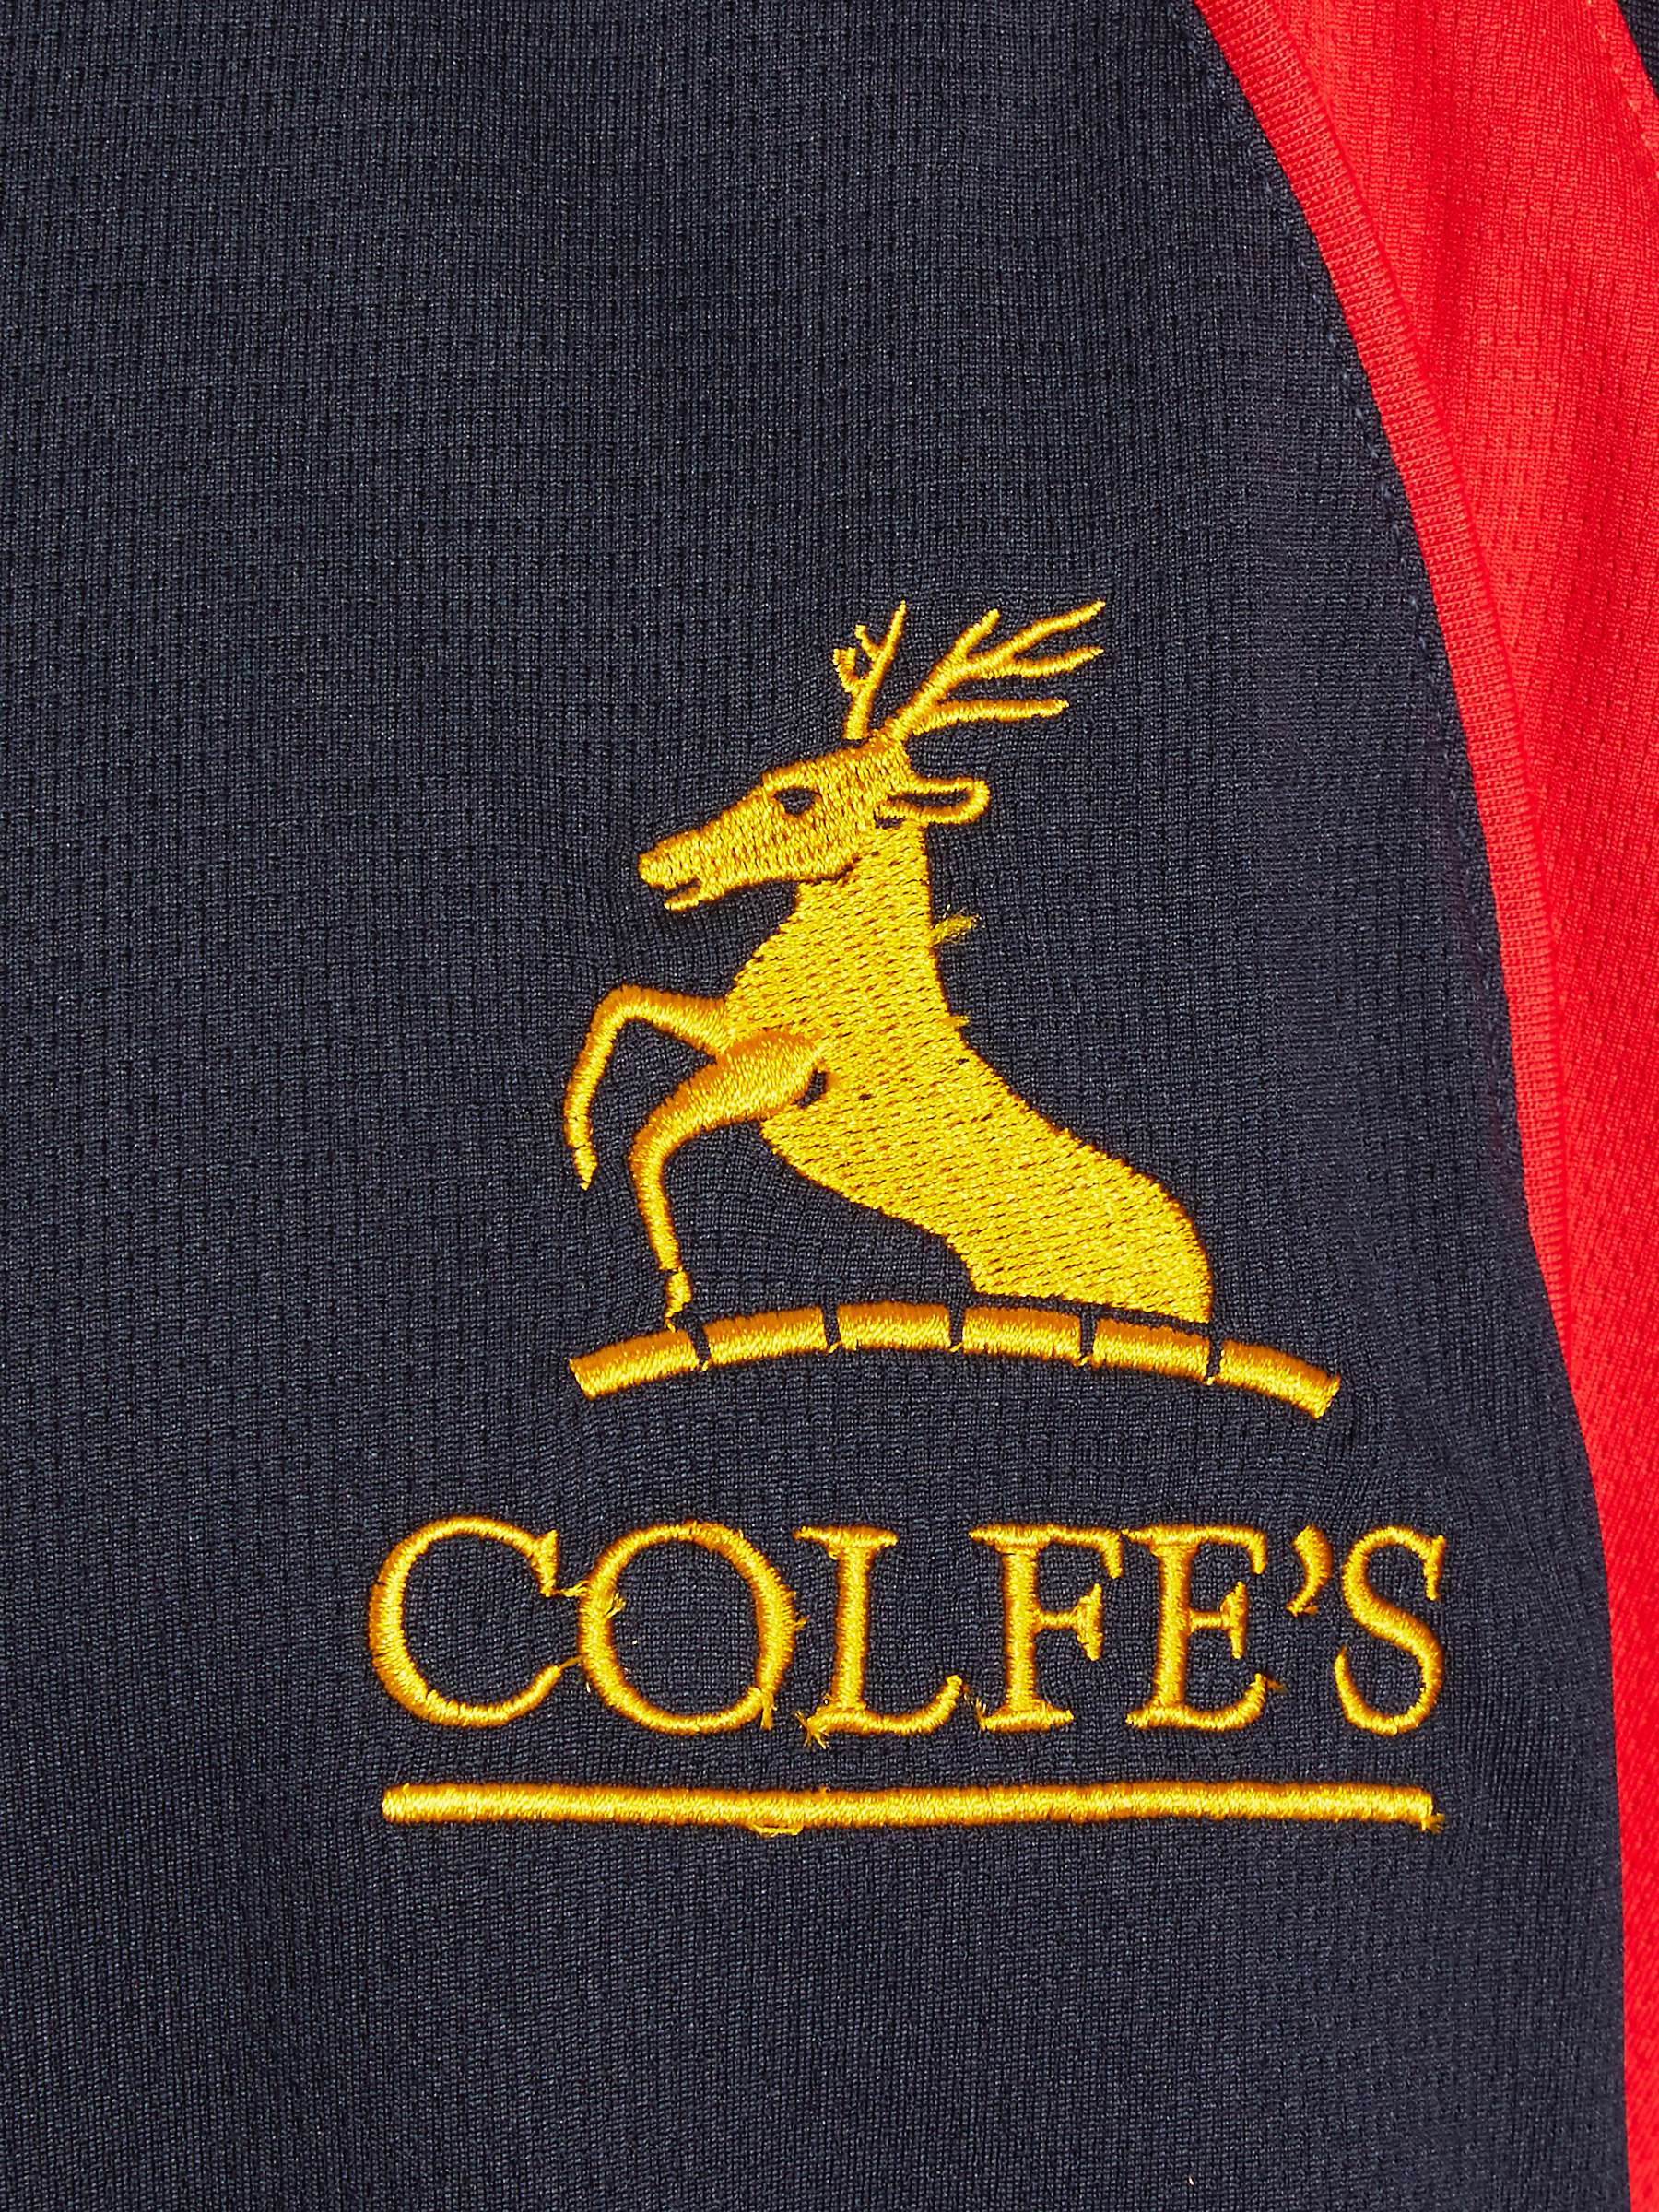 Buy Colfe's School Prendergast PE Top, Navy/Red Online at johnlewis.com